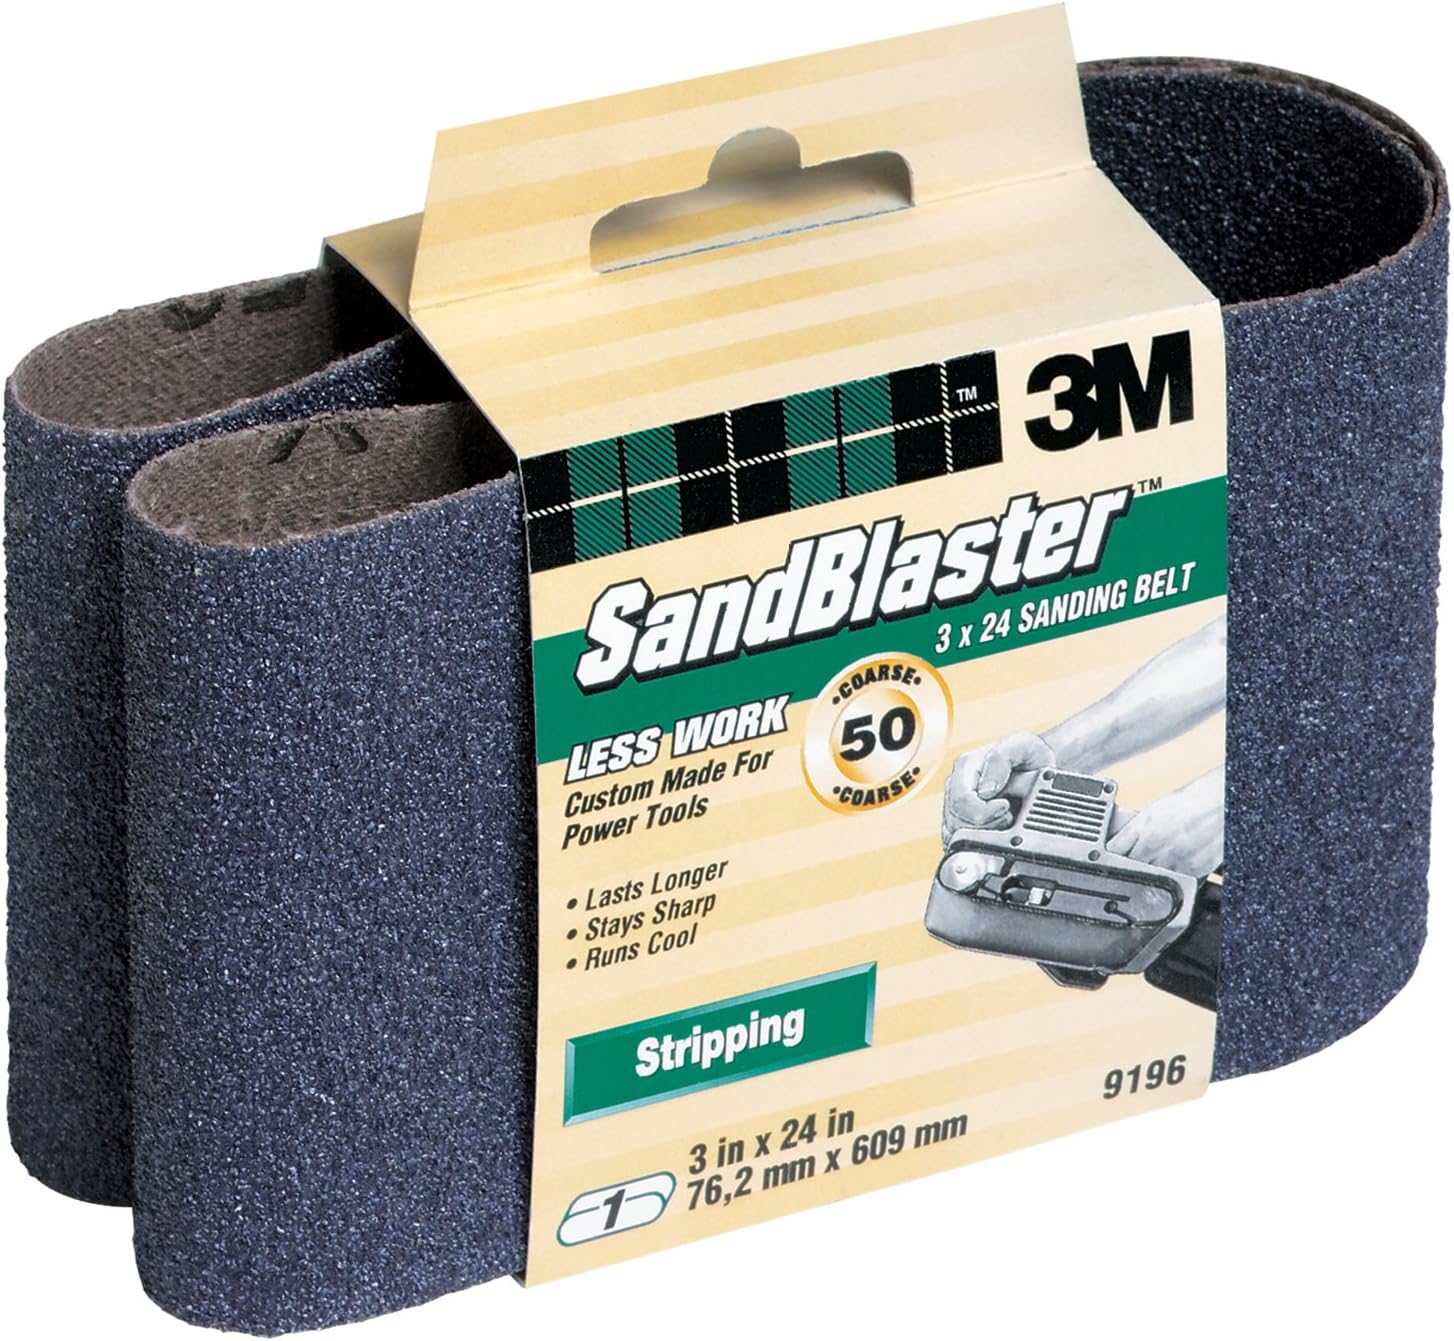 Sandblaster Sanding Belt,9196na,3",pk6